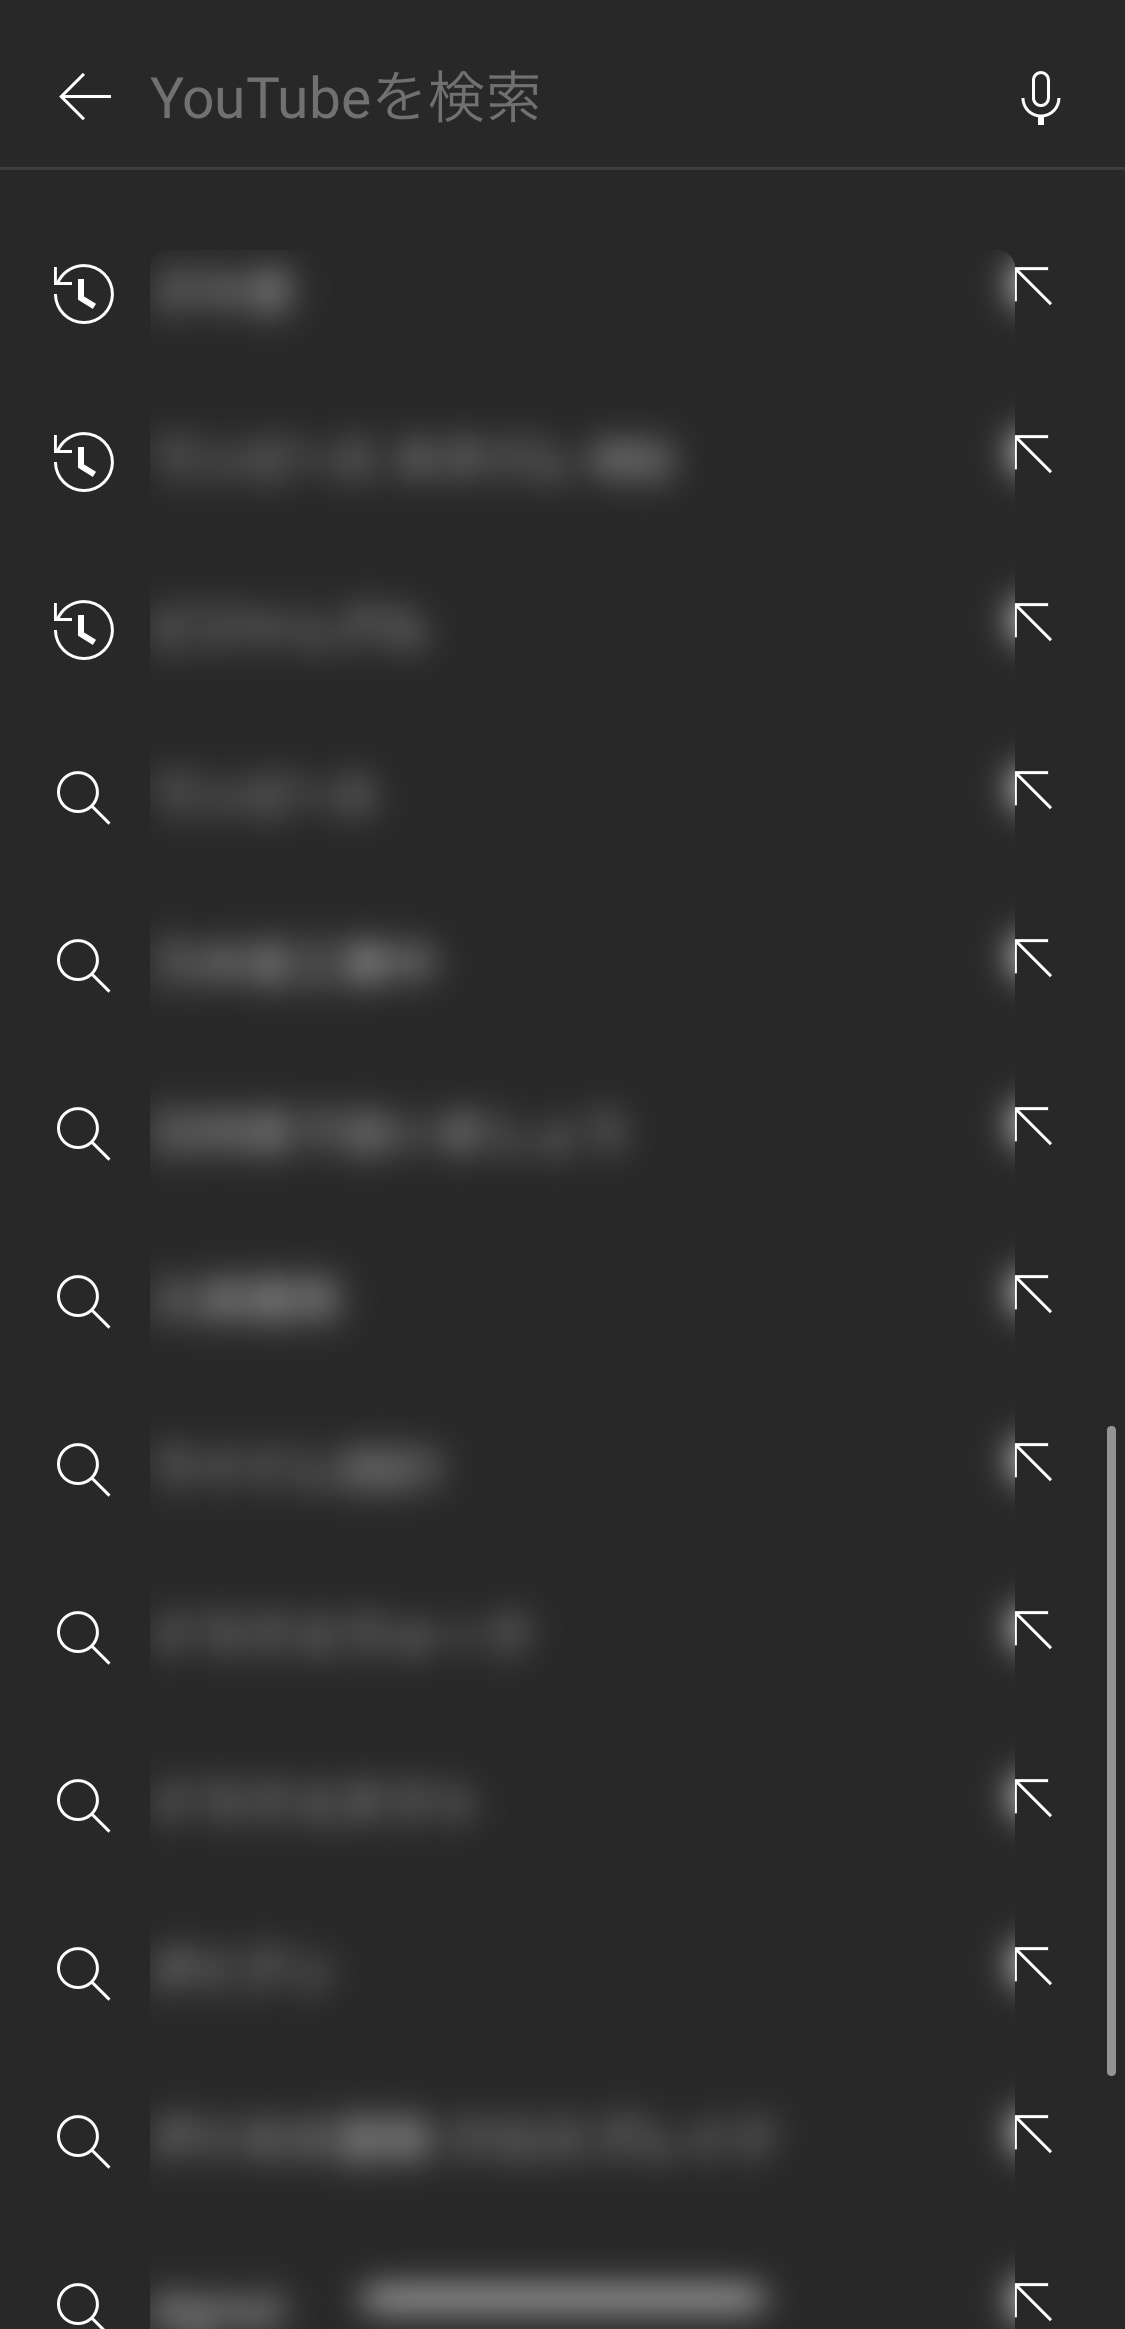 Youtube検索履歴の下に虫眼鏡マークの検索補助 が出てくるが これは何でしょうか Youtube コミュニティ